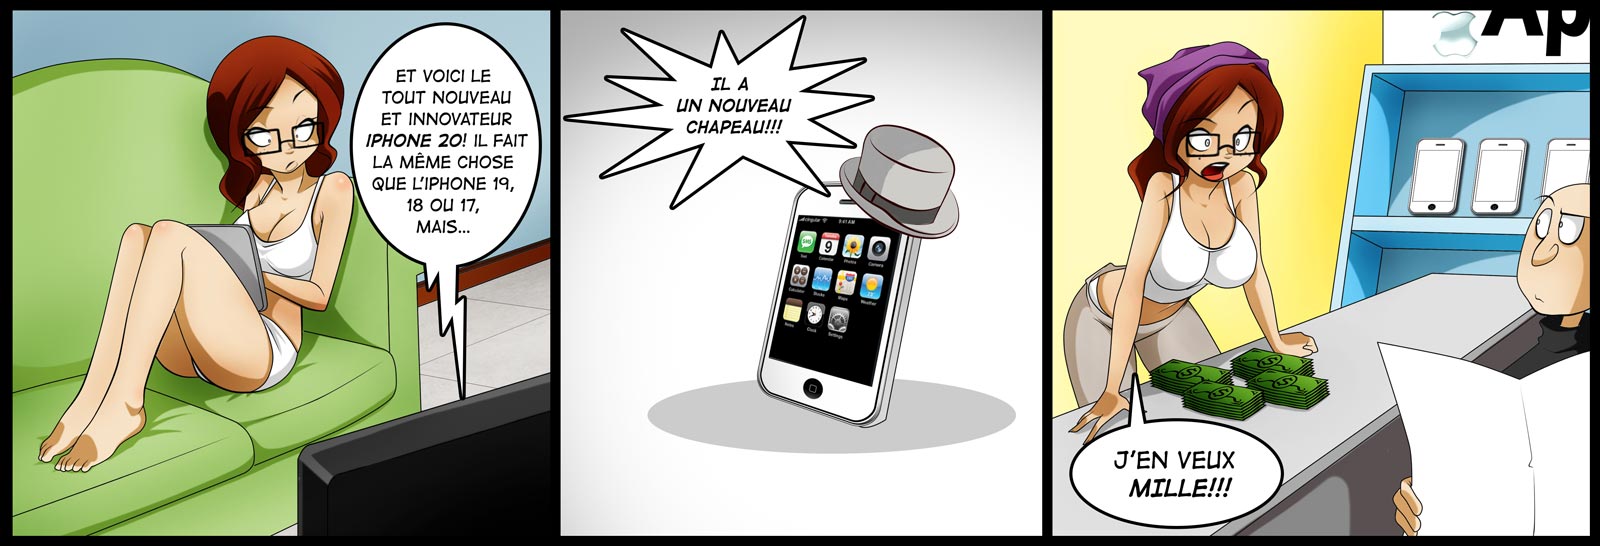 Difficile de résister à l'envie d'un nouvel iPhone? (Image : Jago Dibuja).